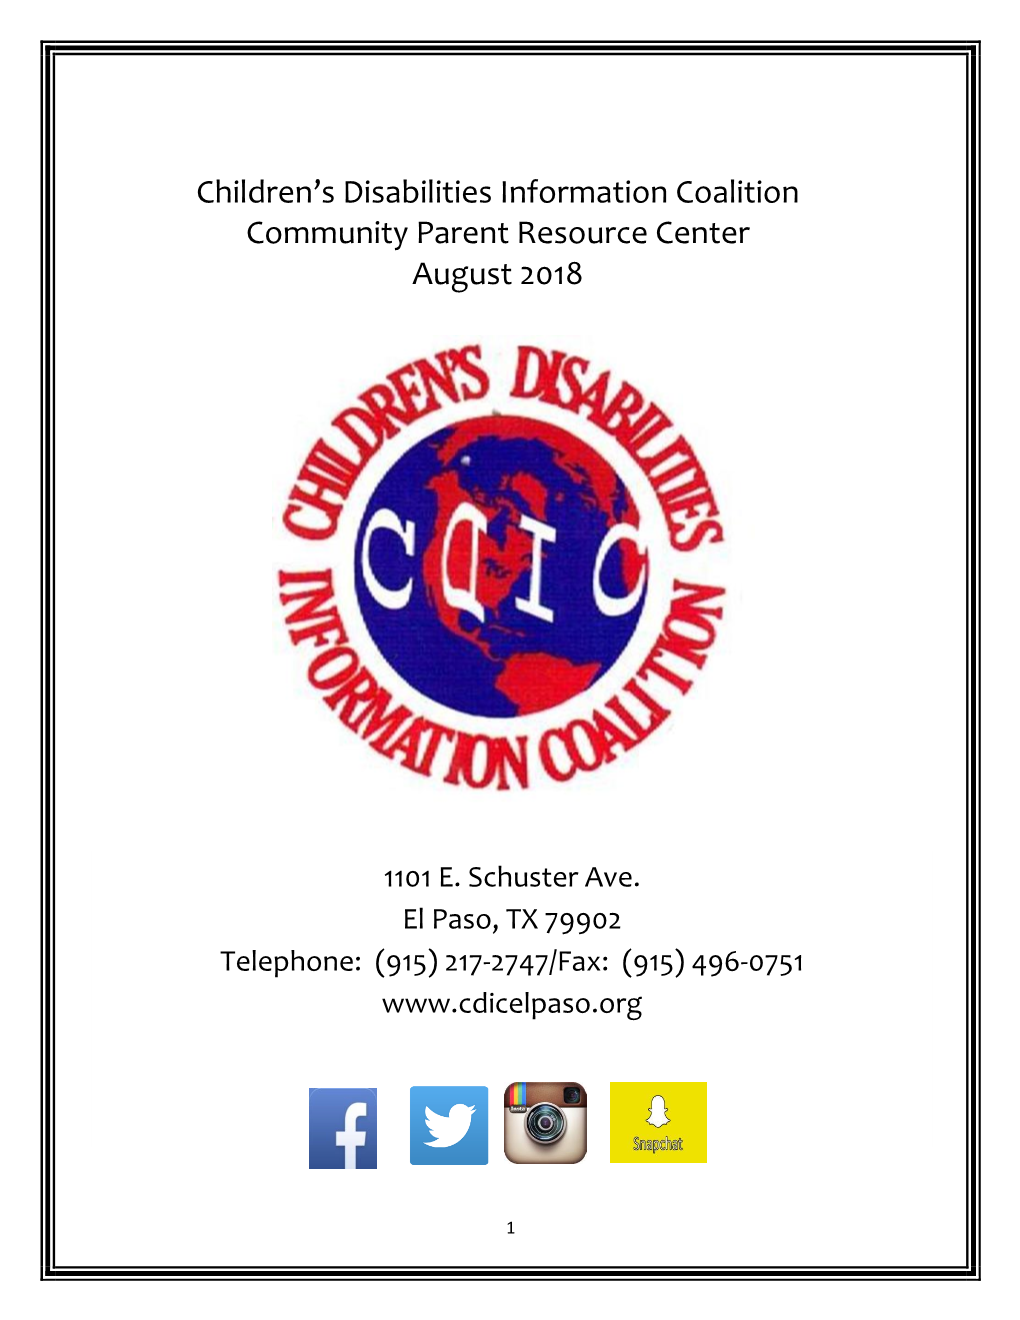 Children's Disabilities Information Coalition Community Parent